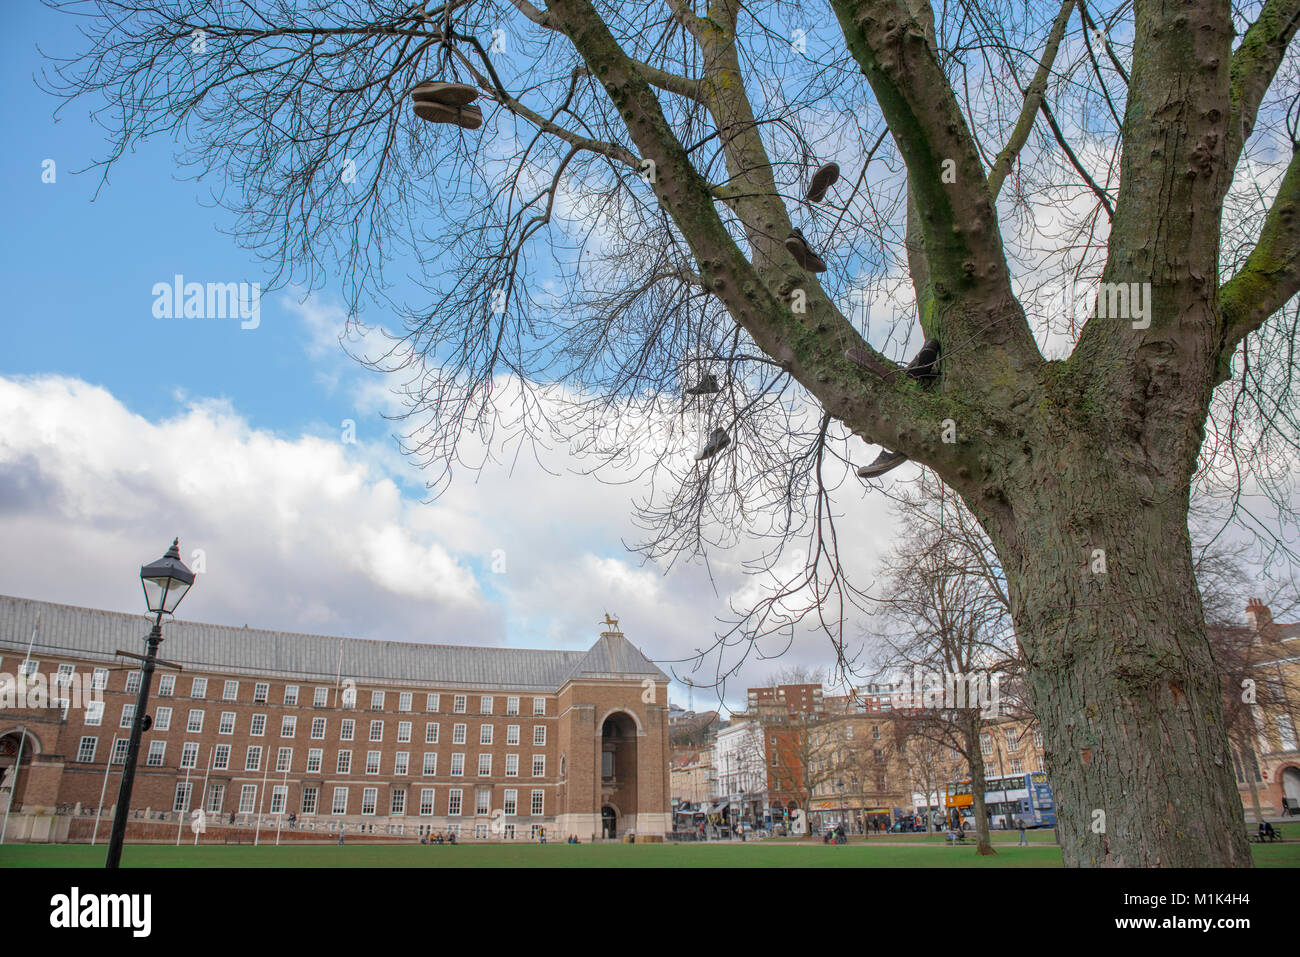 Une vue de la Bristol City Council du collège Green, près de la cathédrale, avec l'arbre de la chaussure et d'un réverbère, vivid blue sky and clouds Banque D'Images